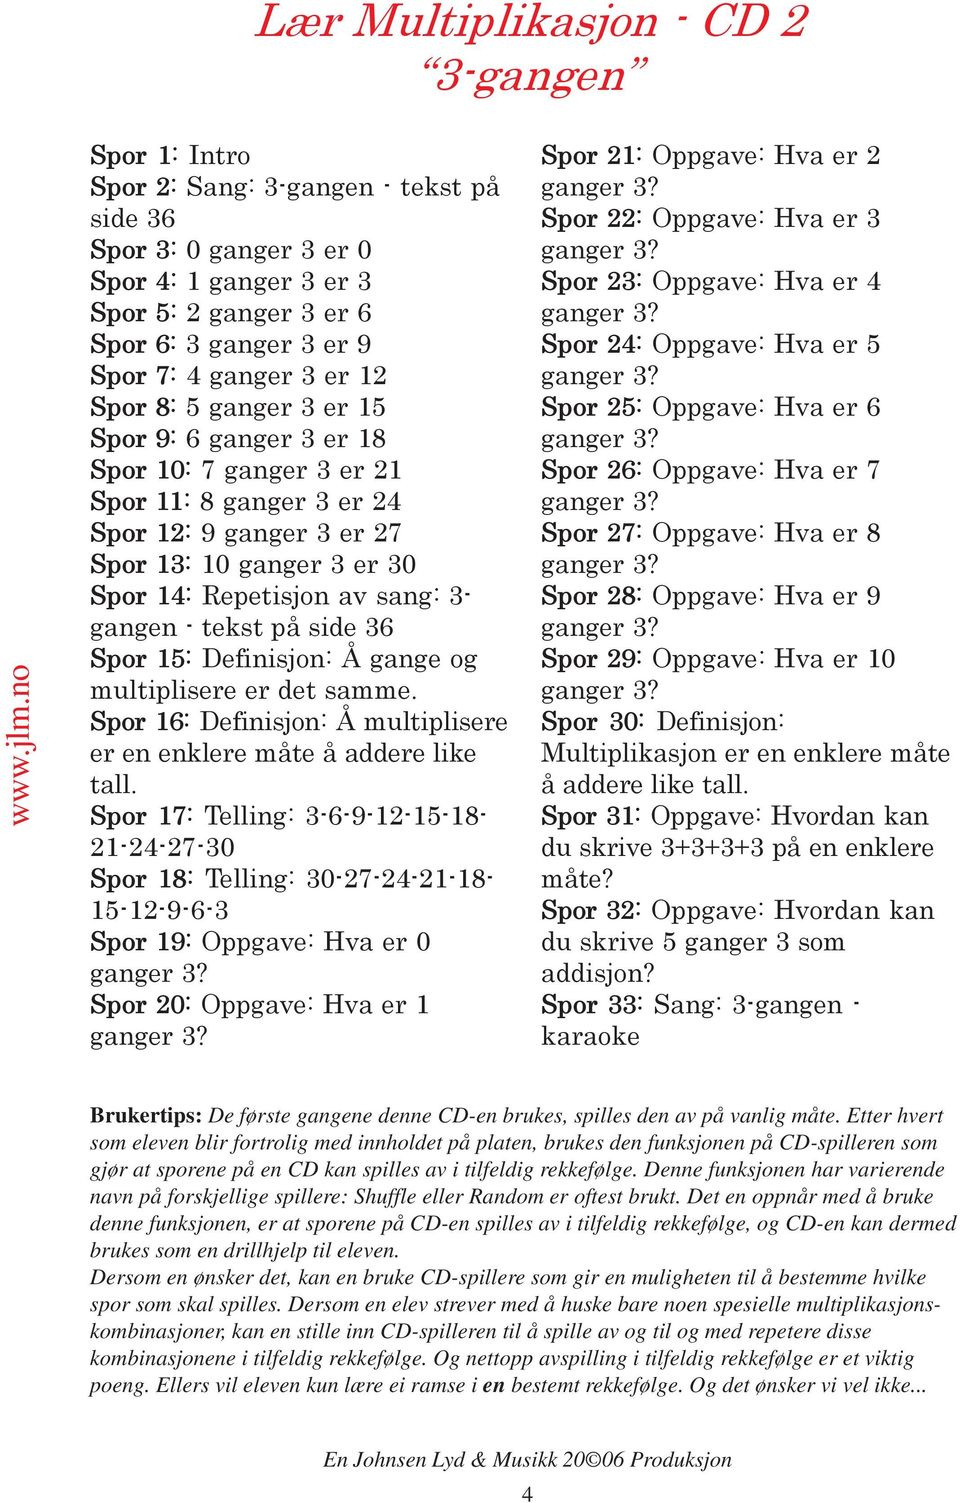 3- gangen - tekst på side 36 Spor 15: Definisjon: Å gange og multiplisere er det samme. Spor 16: Definisjon: Å multiplisere er en enklere måte å addere like tall.